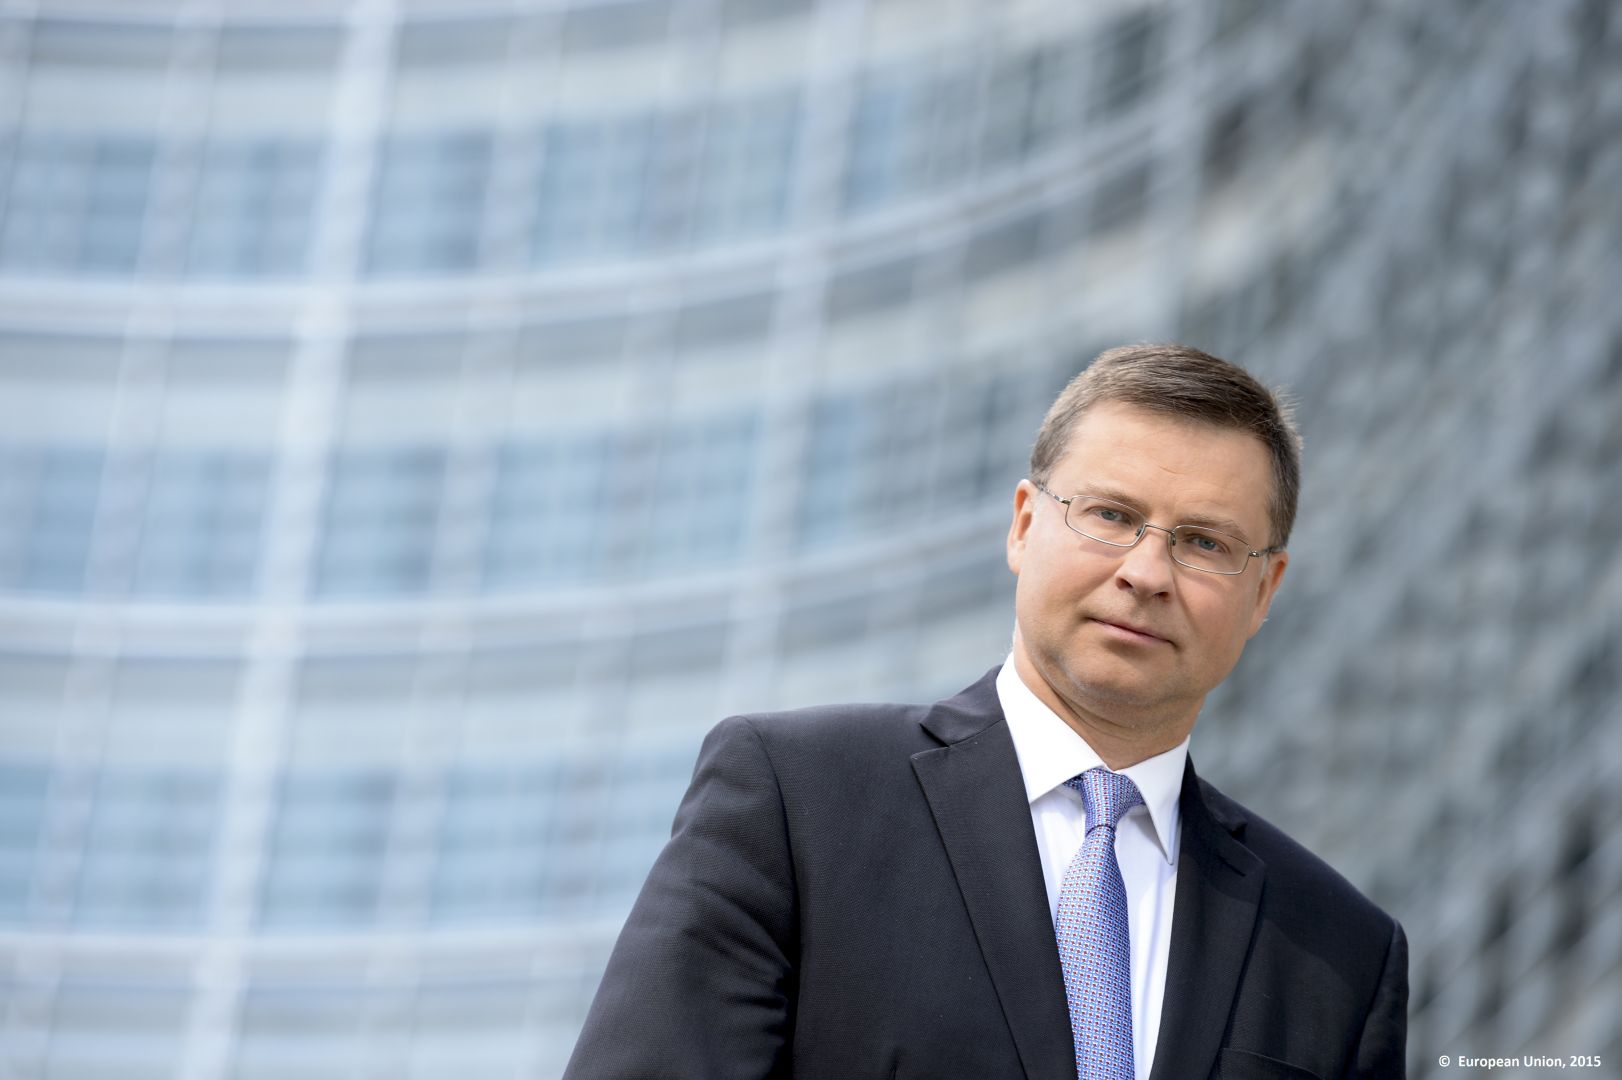 Der Höhepunkt der Energiepreise verschlechtert die historisch negative Energiebilanz der EU - Dombrovskis